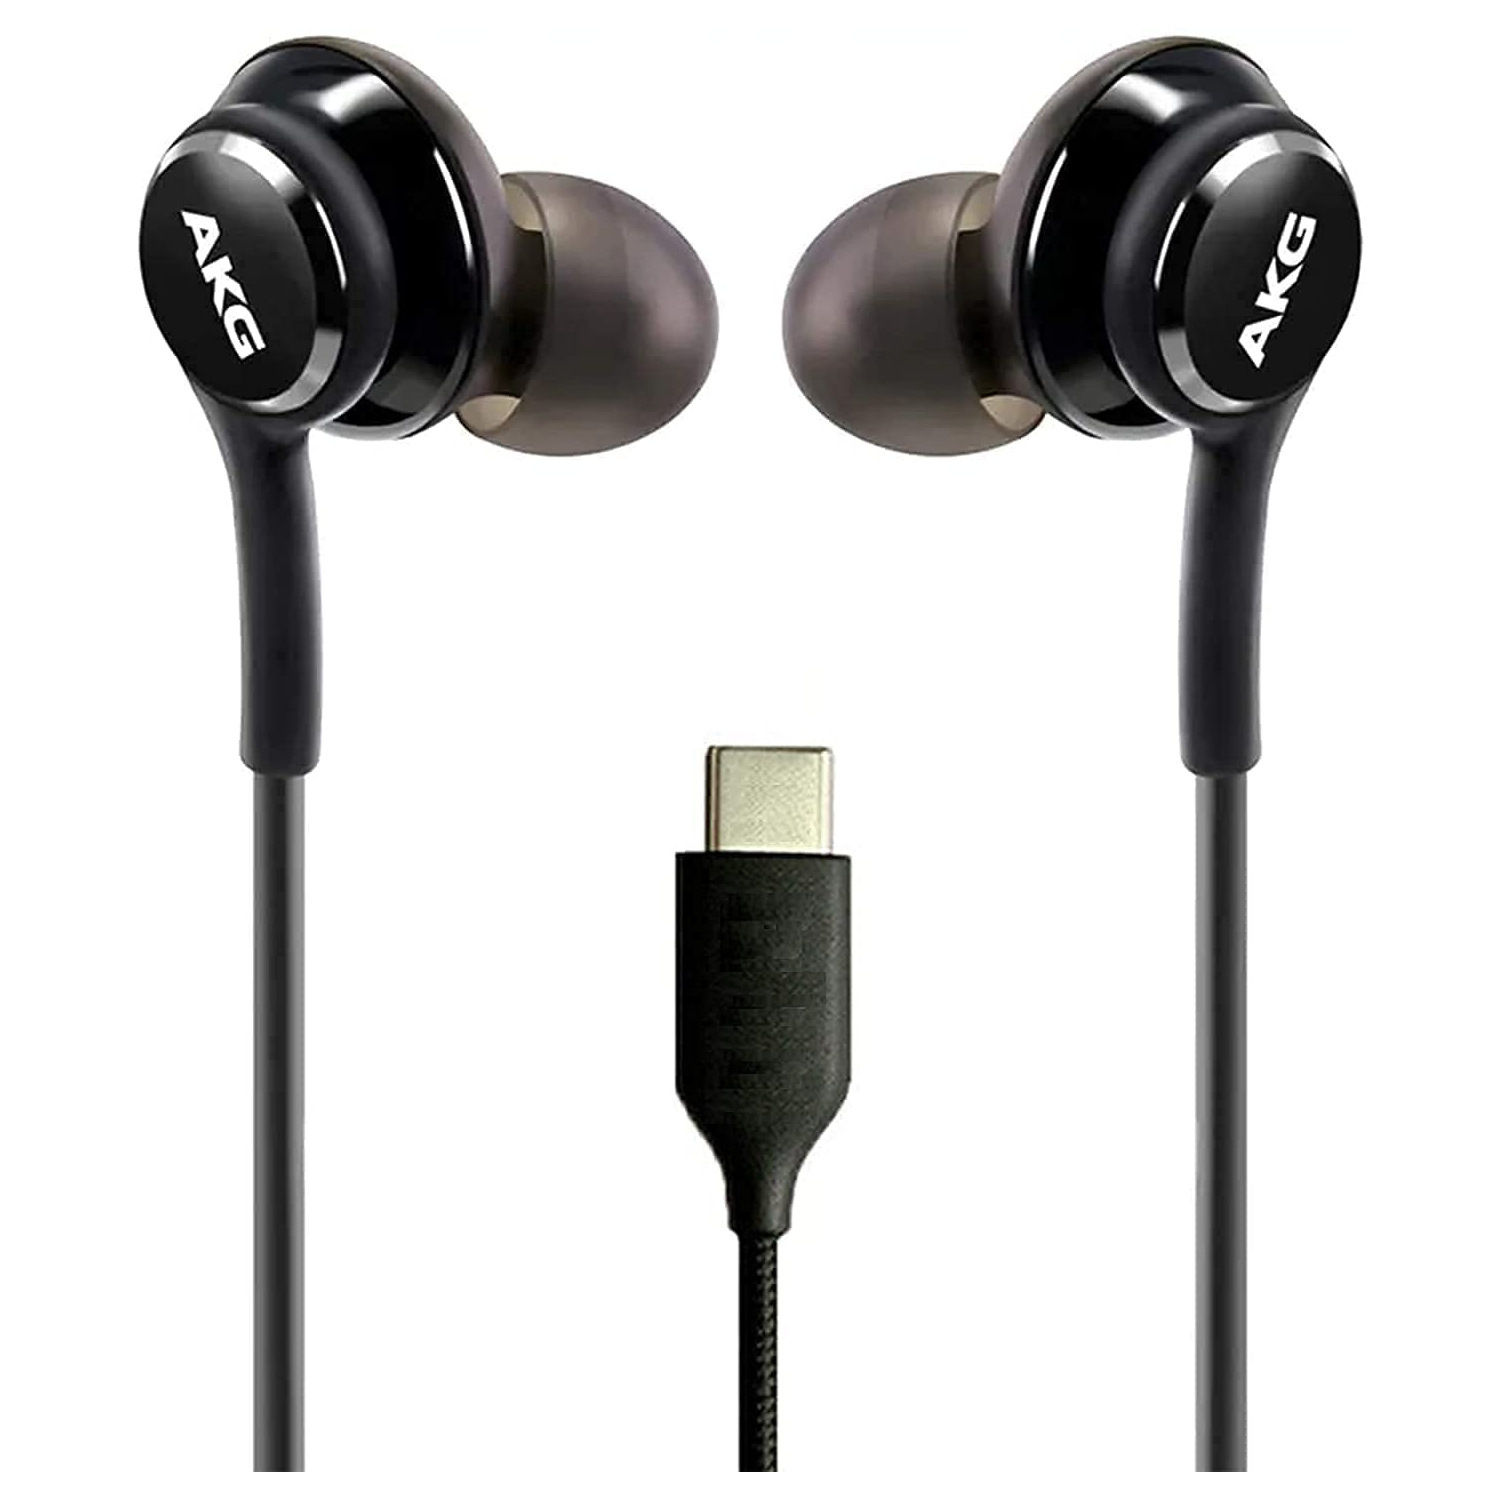 Samsung -USB AKG Earbuds - Type-c Earphones - Wired In-ear Headphones - SAMSUNG ORIGINAL - S10, S10 Plus, Note 9, Note 10 Plus - Black